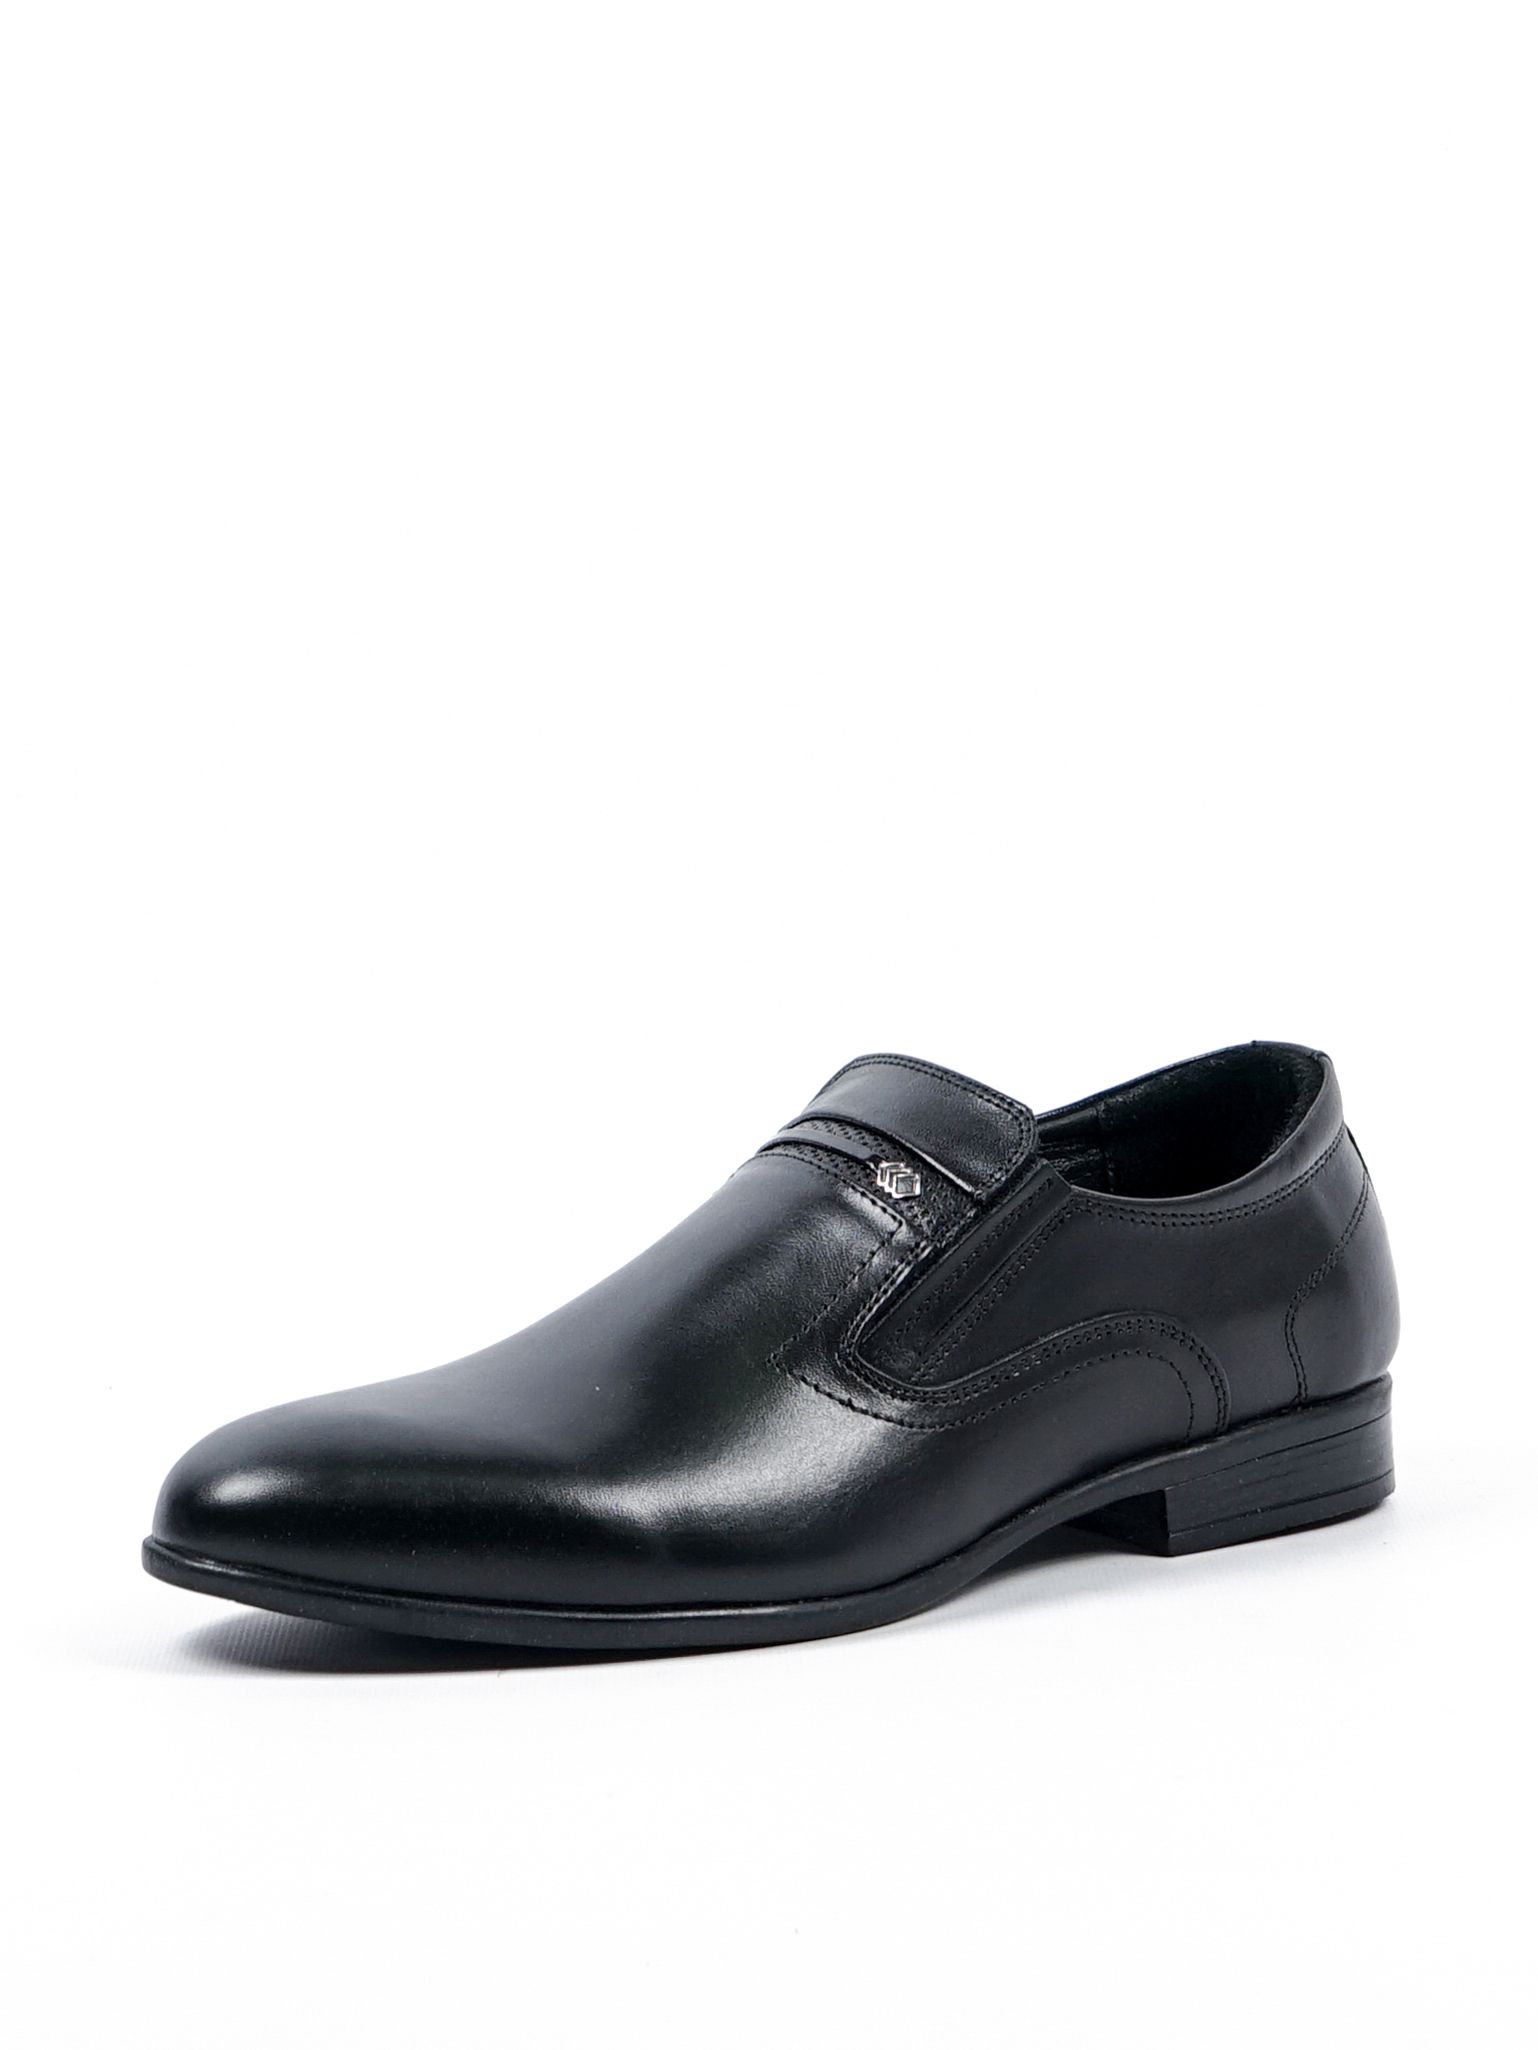 Туфли мужские Comfort Shoes 1099 черные 41 RU